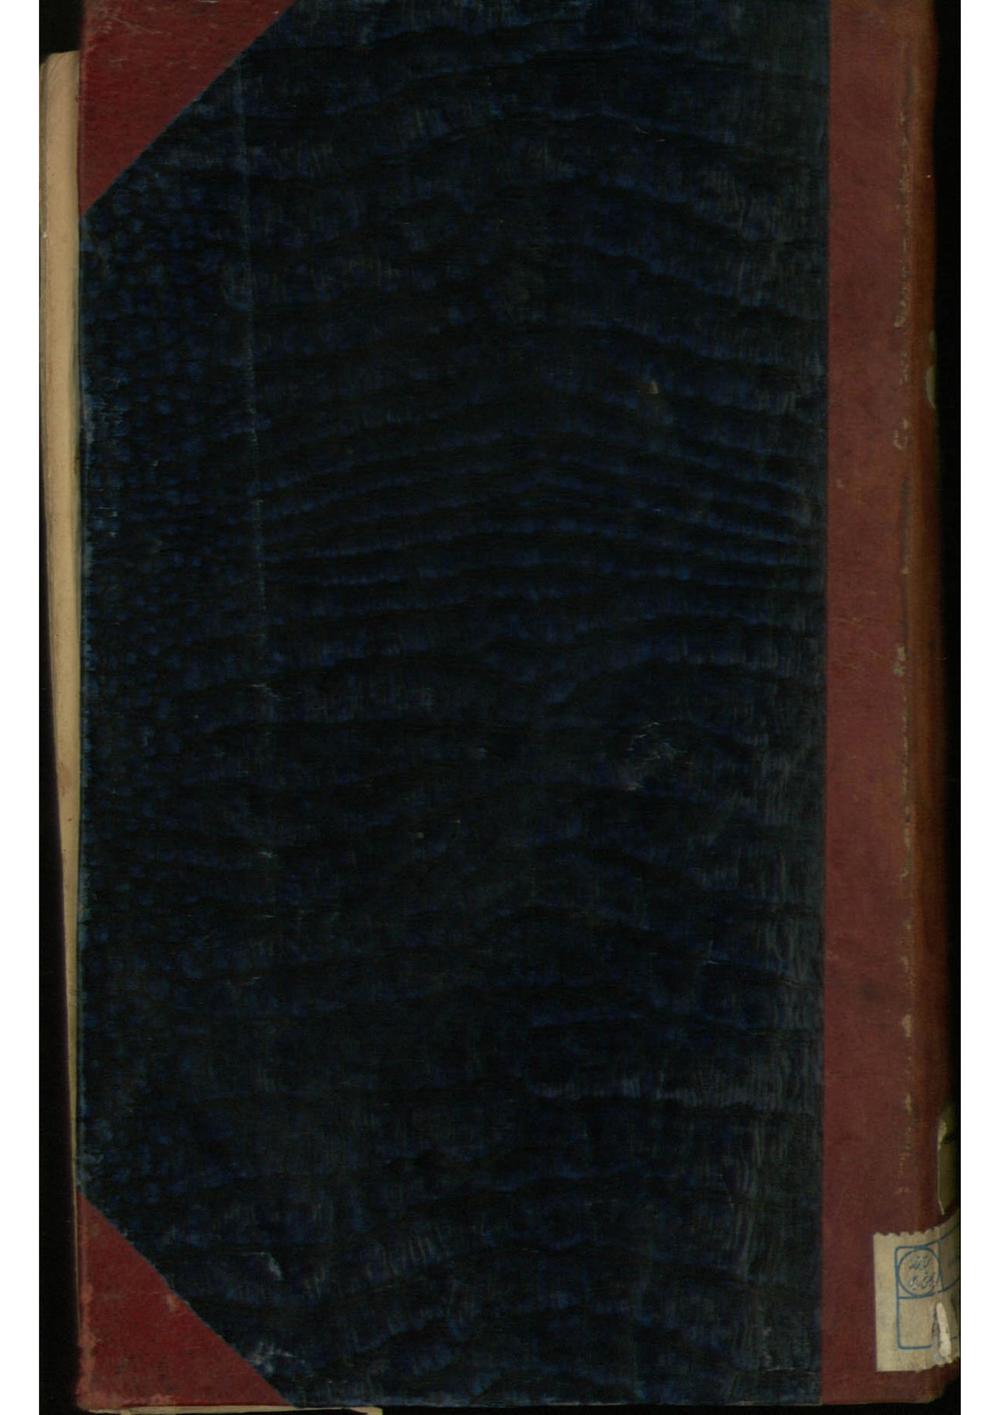 شرح قواعد الاحكام = شرح كتاب البيع؛شيخ جعفر بن شيخ خضر نجفي مشهور به كاشف الغطاء (1227)